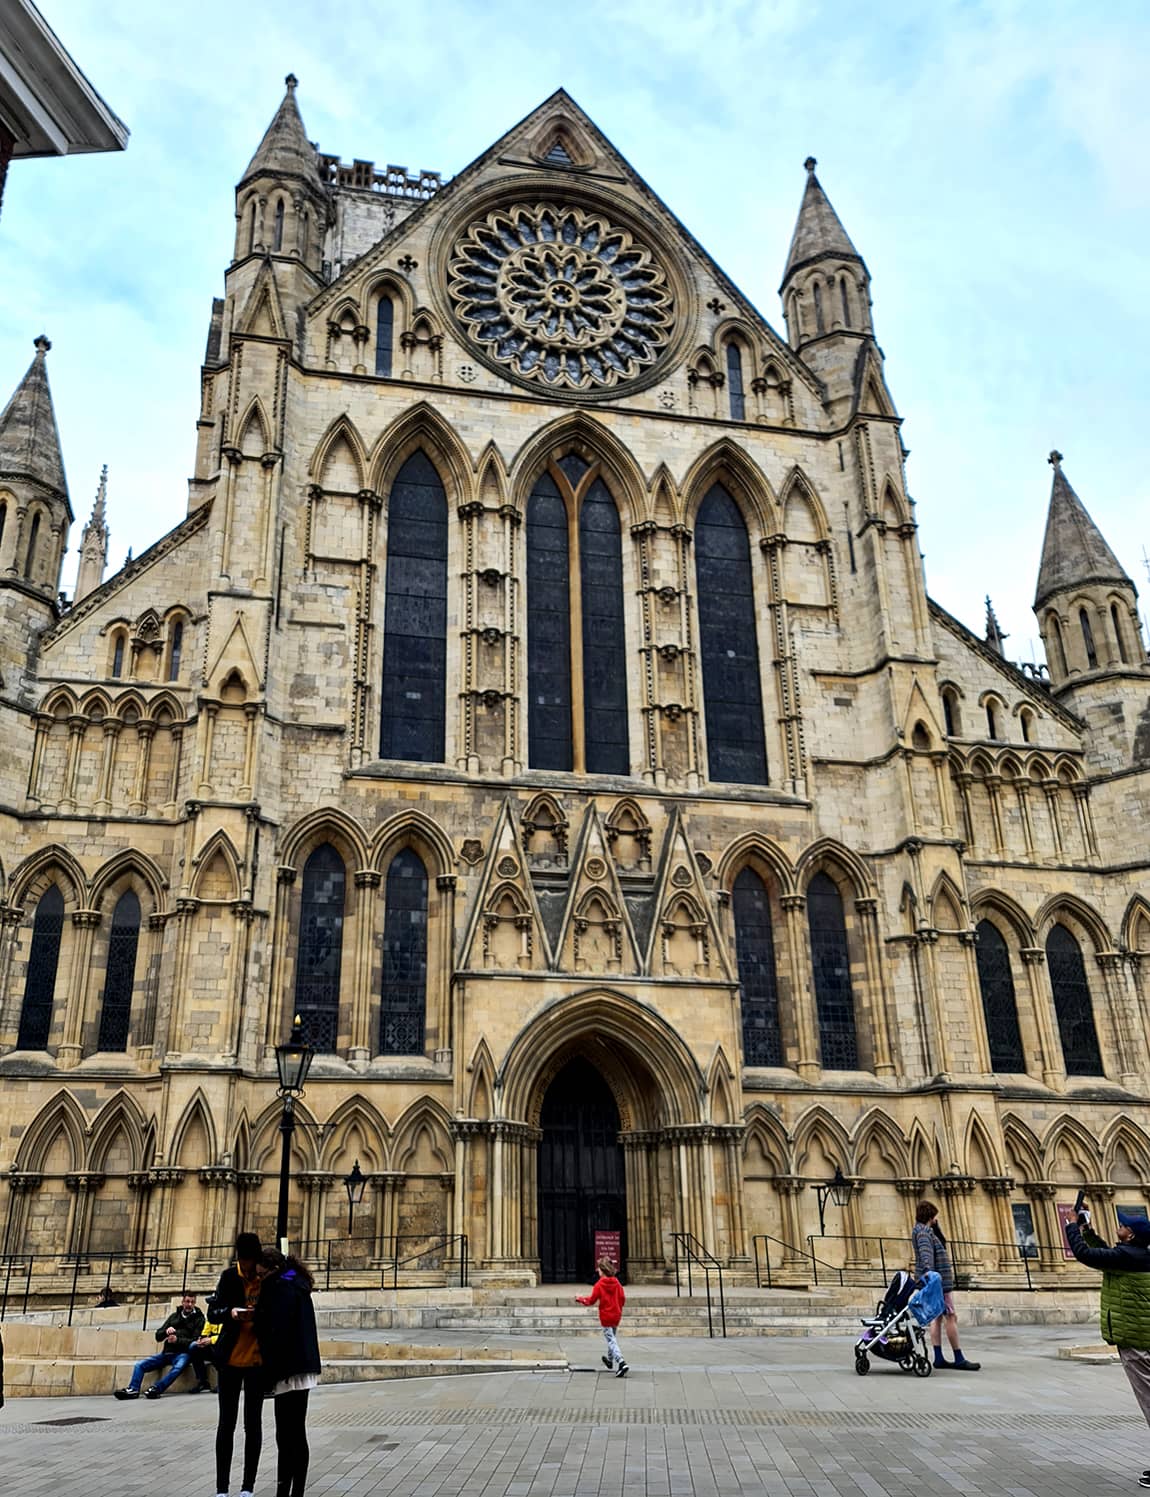 Una foto della facciata della Cattedrale di York, in stile gotico